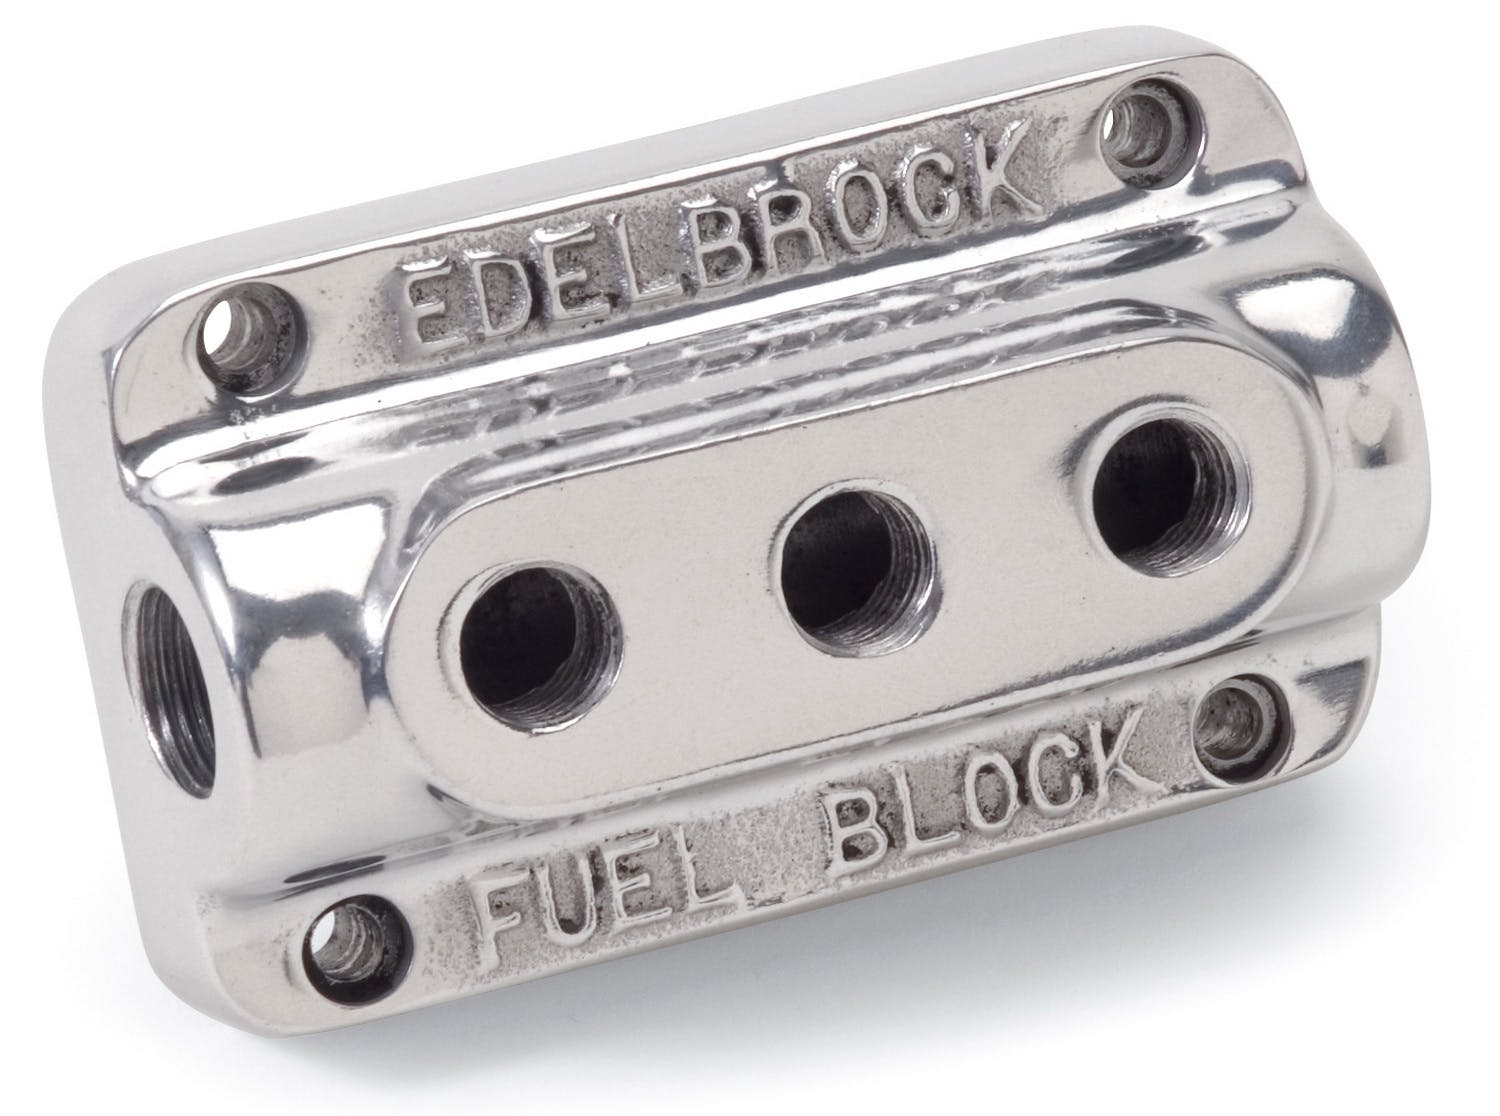 Edelbrock 12851 Polished Triple Outlet Fuel Block Kit